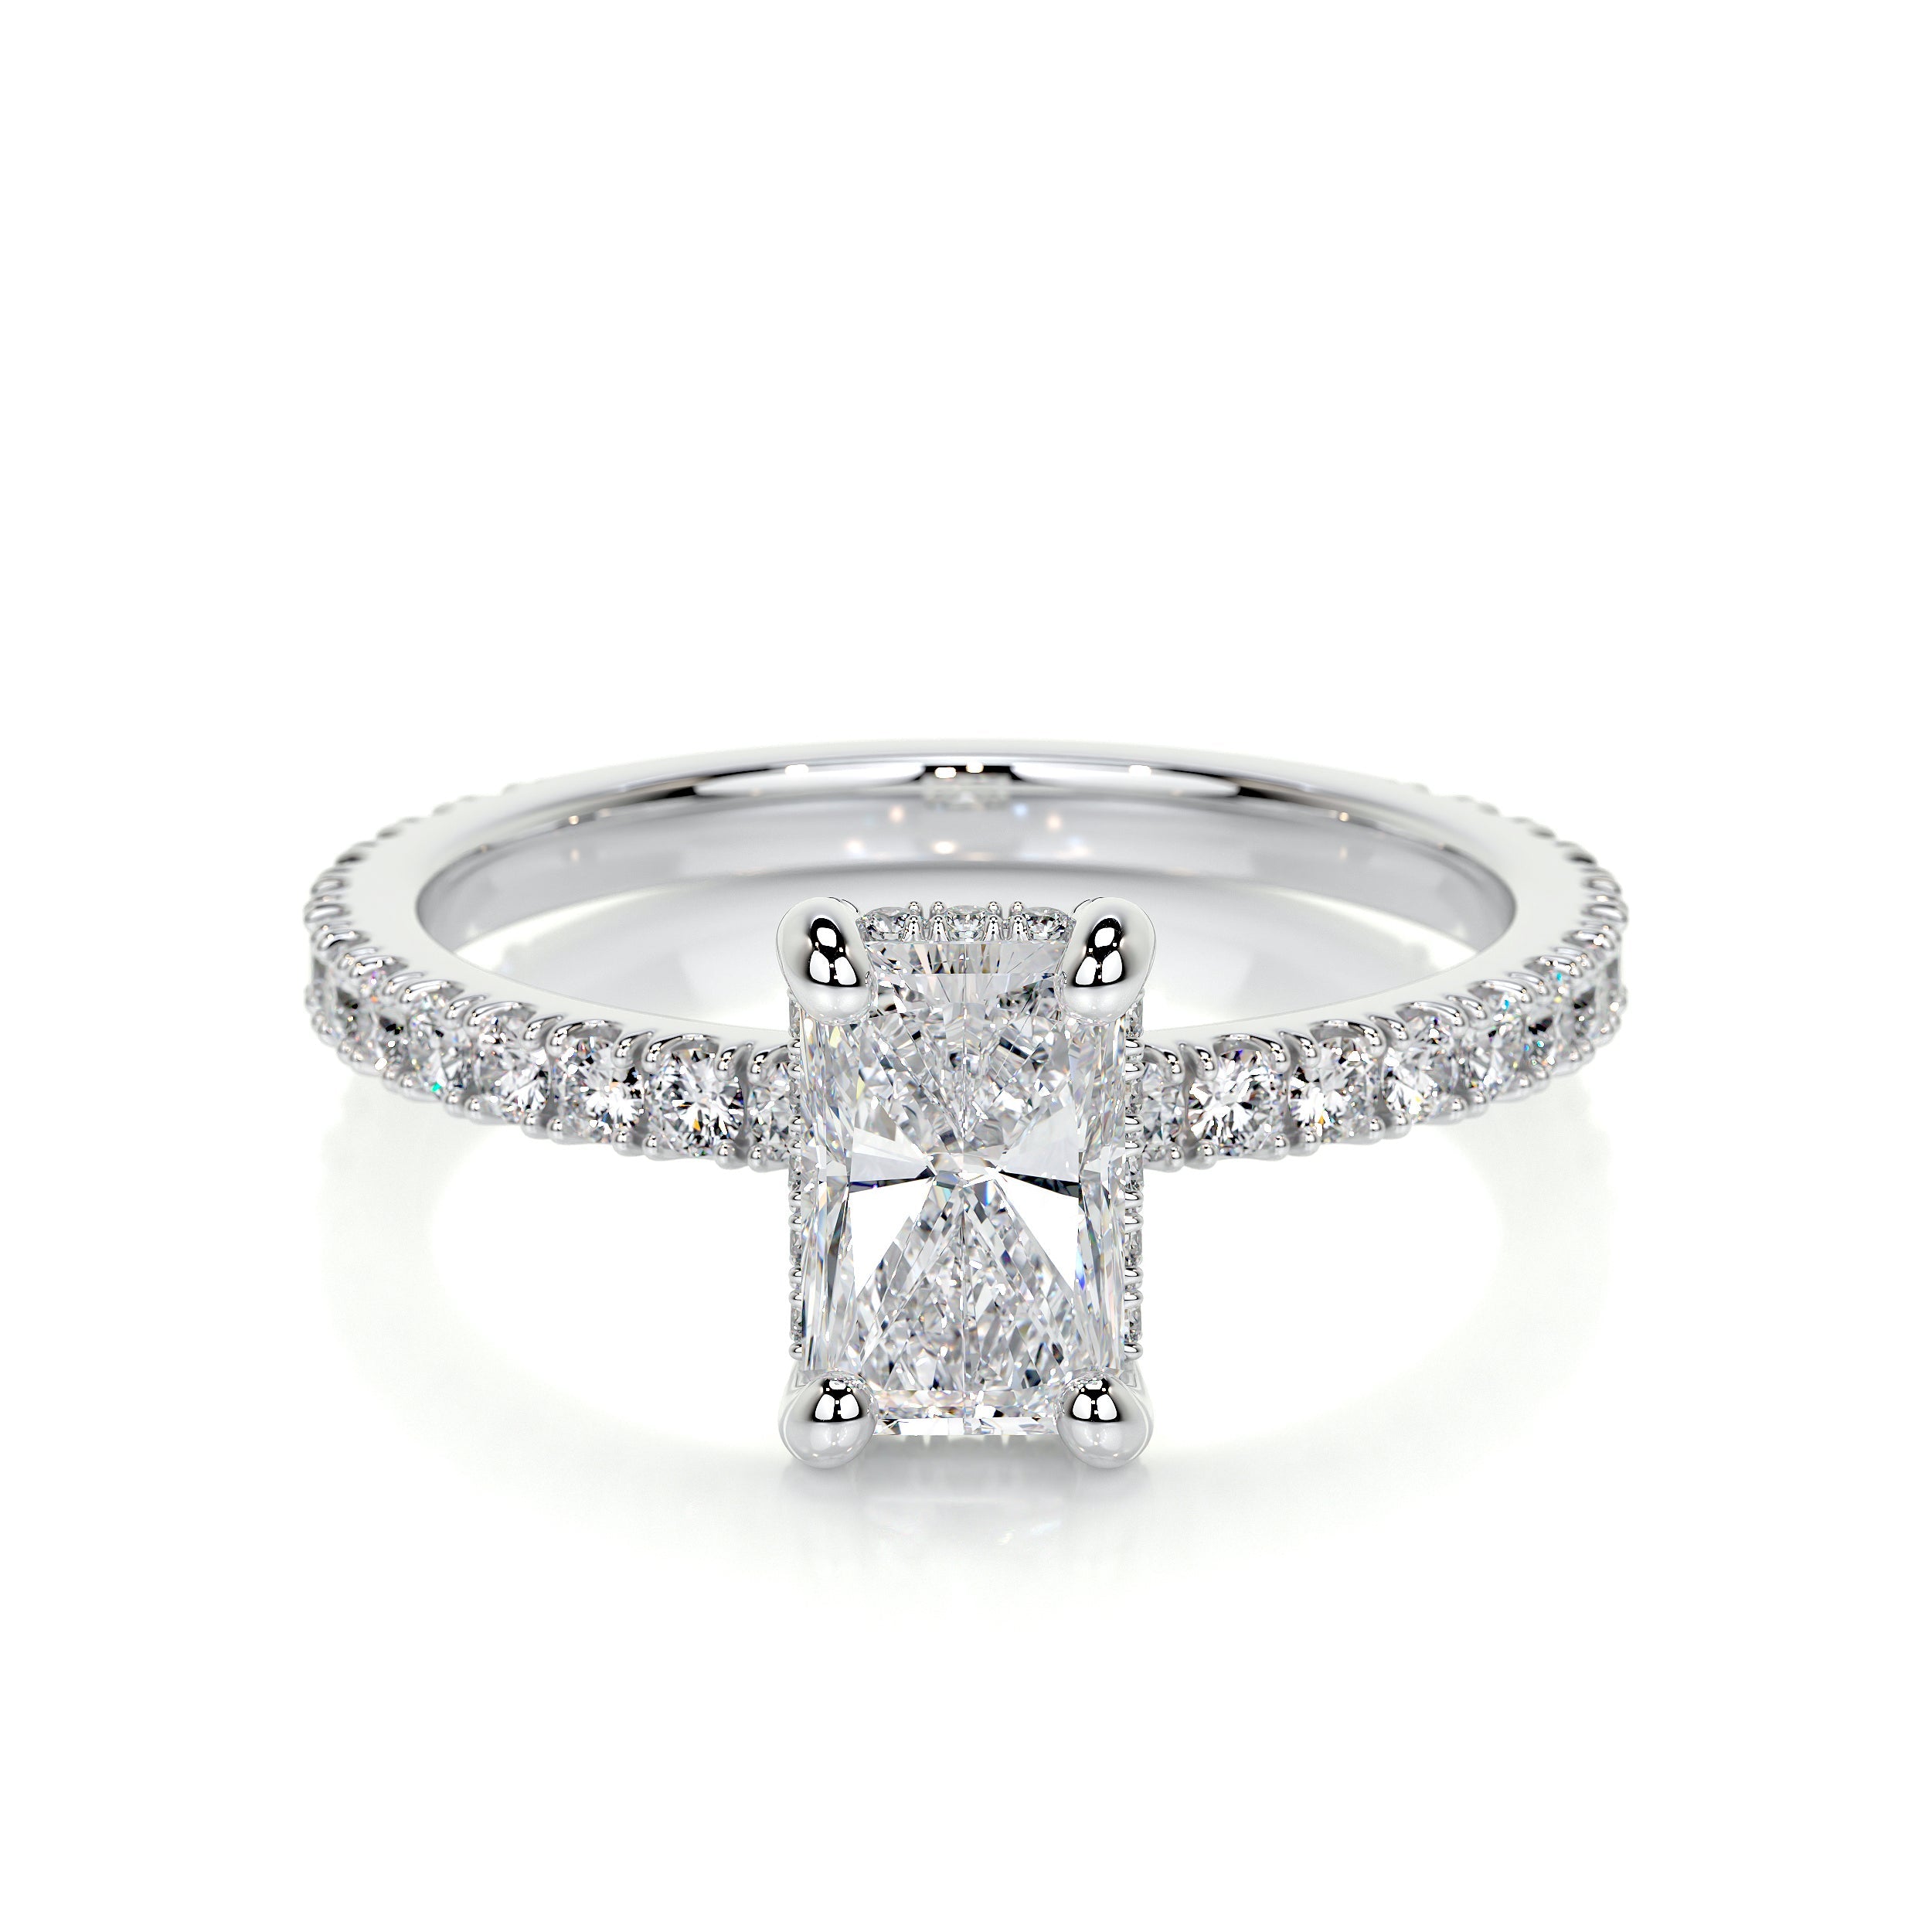 Deborah Lab Grown Diamond Ring   (1.5 Carat) -Platinum